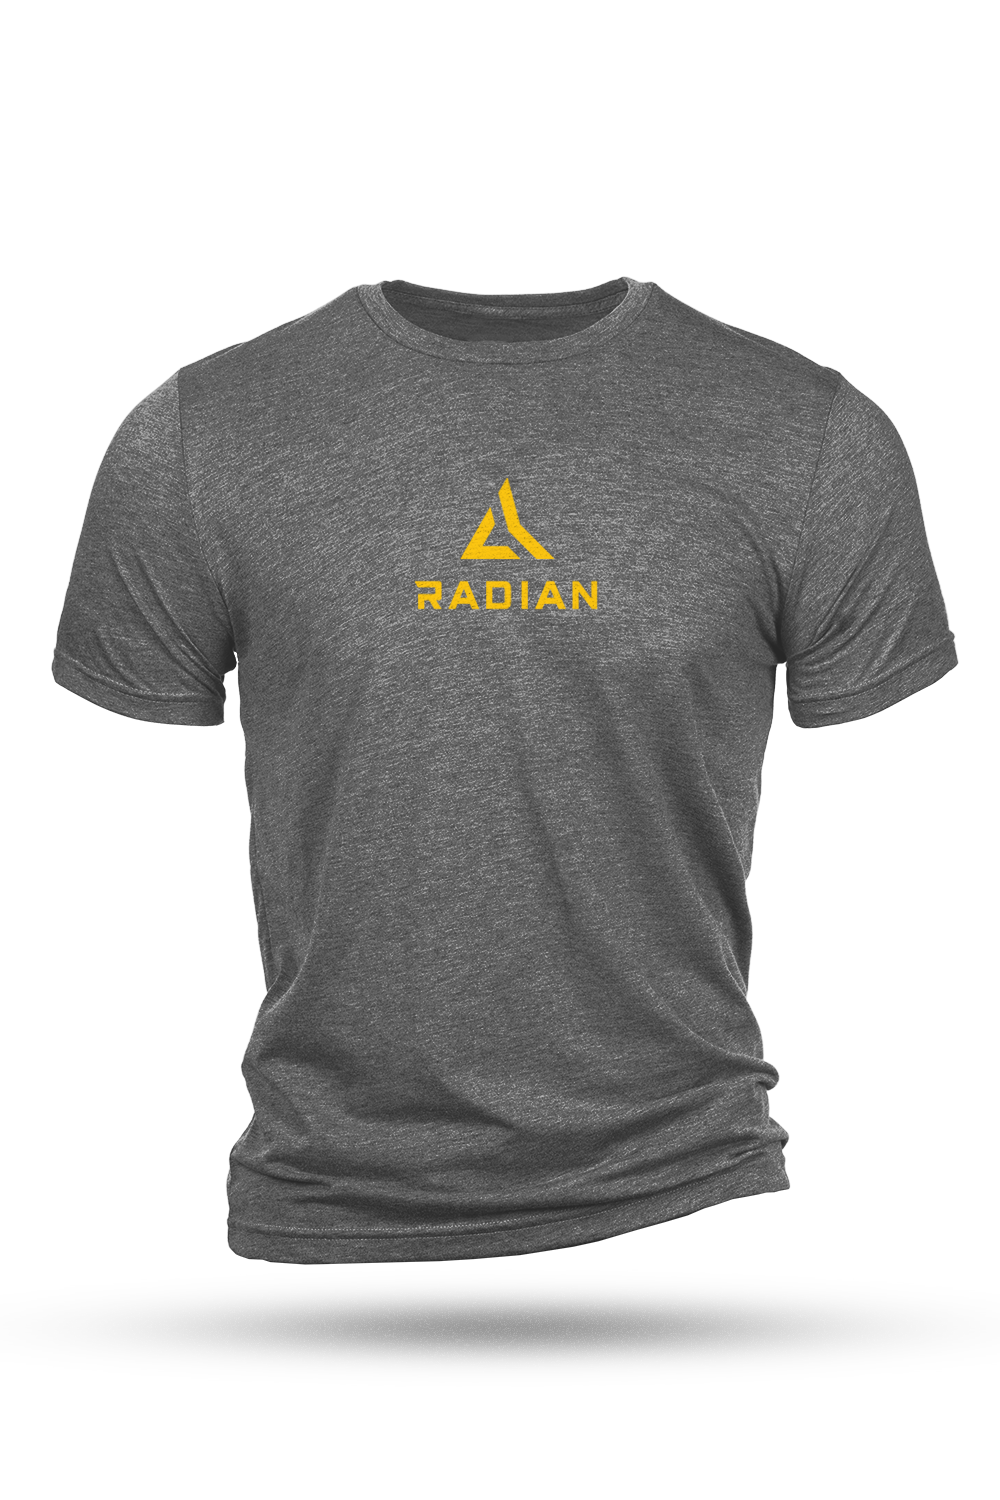 Radian Stacked Logo Tee Shirt